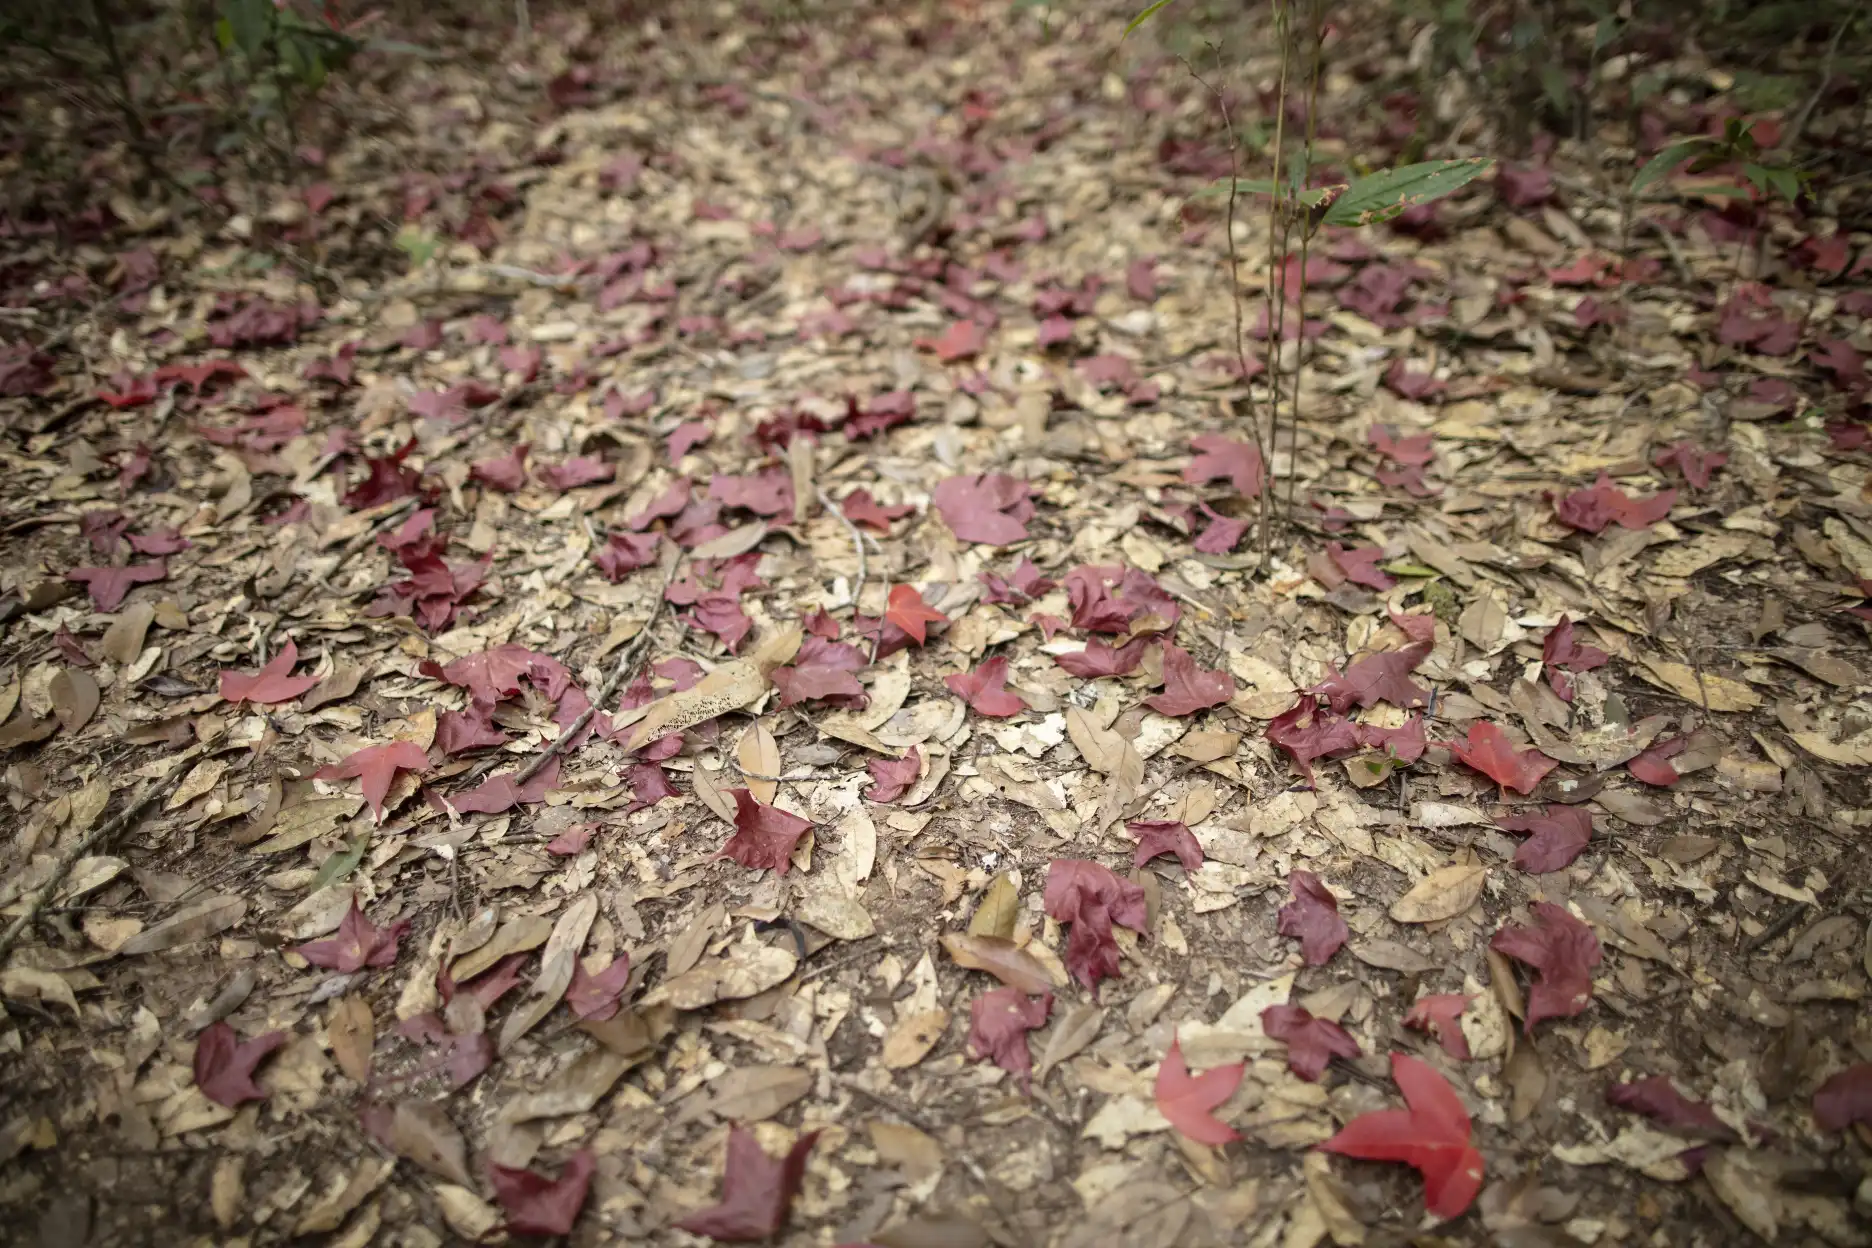 Carpet of red Acer calcaratum leaves